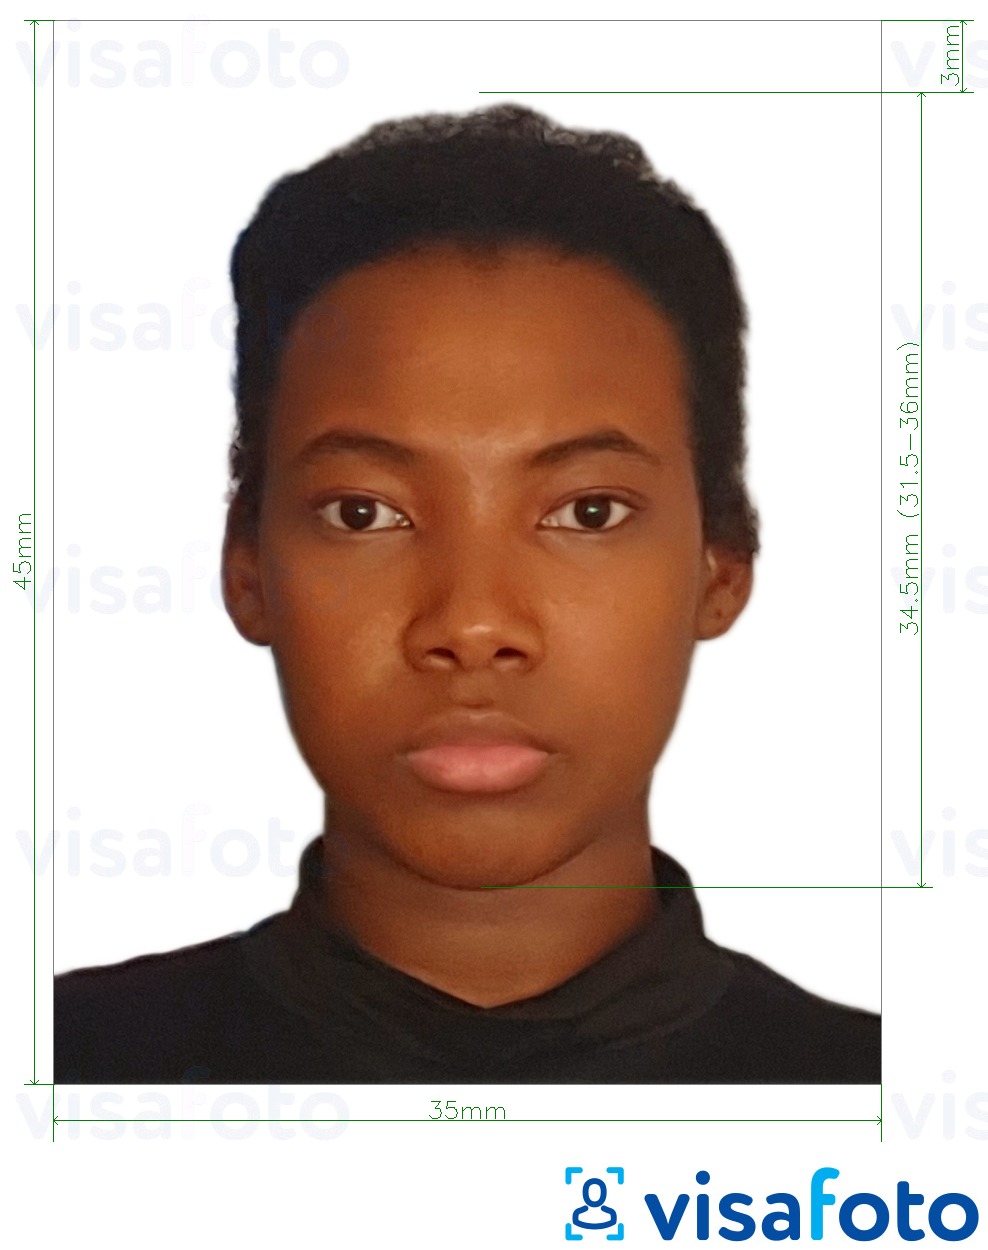 نمونه ی یک عکس برای گذرنامه بنین 3.5x4.5 سانتی متر (35x45 میلی متر) با مشخصات دقیق